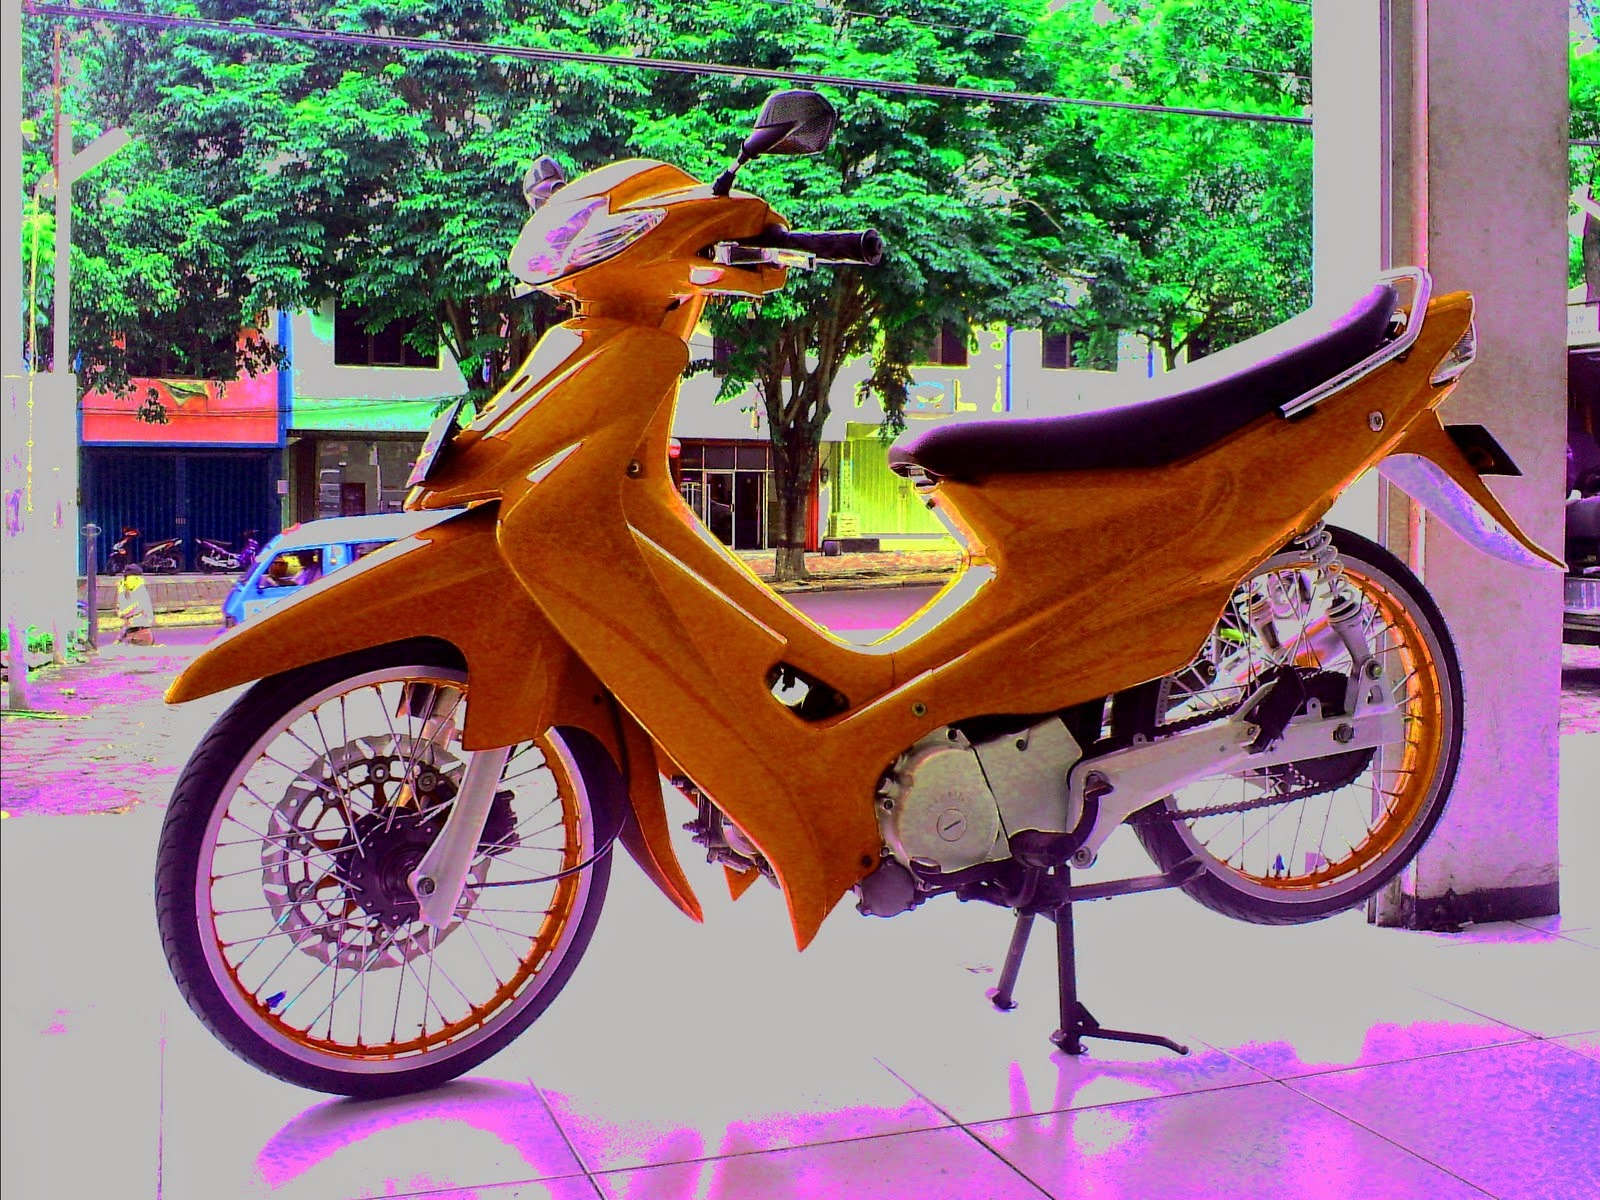 Koleksi Gambar Sepeda Motor Suzuki Terlengkap Codot Modifikasi